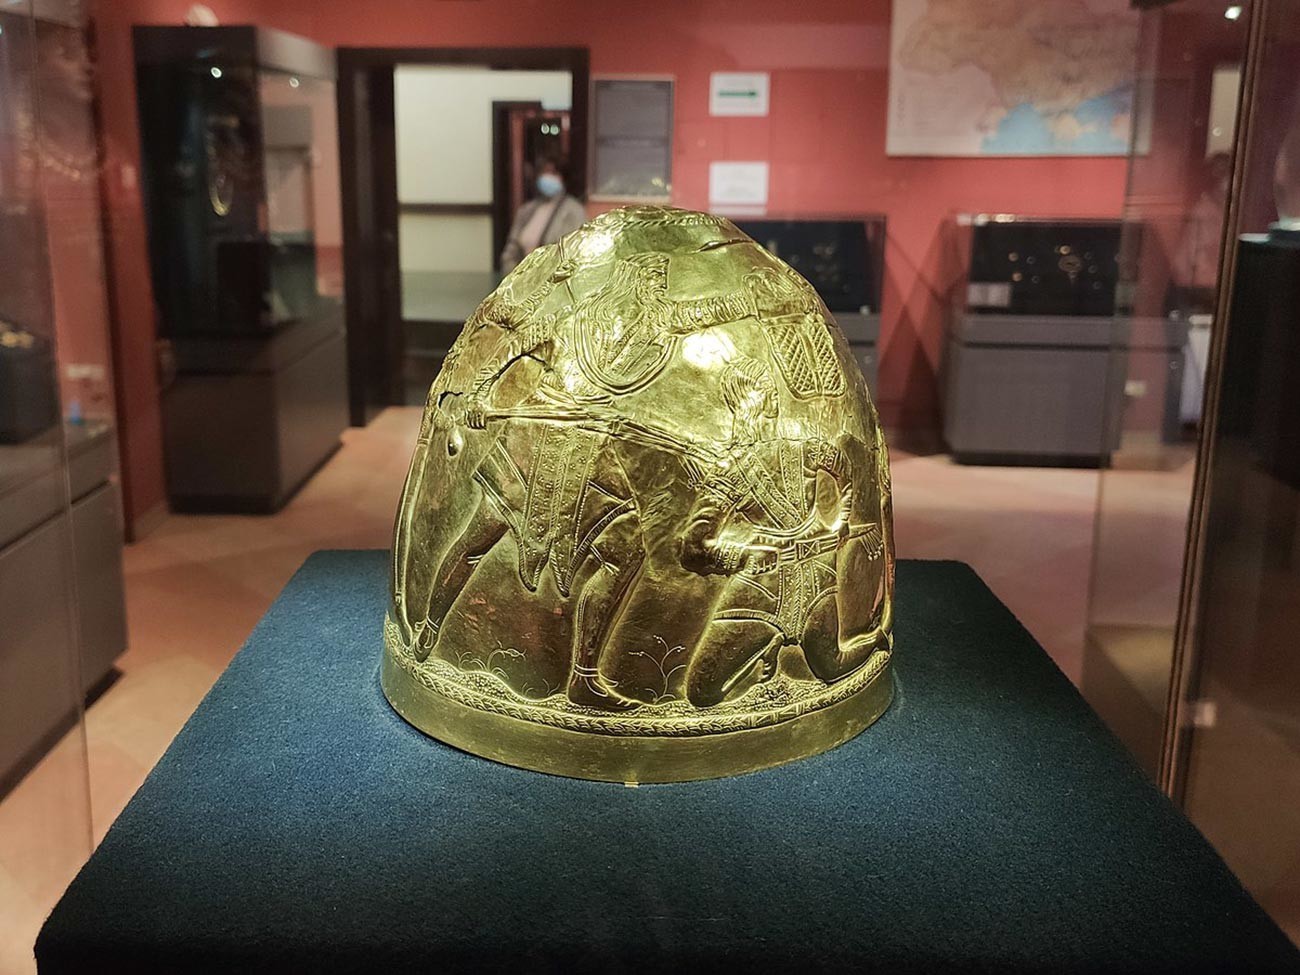 Slavnostna zlata čelada skitskega vladarja iz 4. stoletja pr.n.št., najdena leta 1988 blizu vasi Zrubne, Doneška oblast, Ukrajina. Razstava Muzeja zgodovinskih zakladov Ukrajine.
